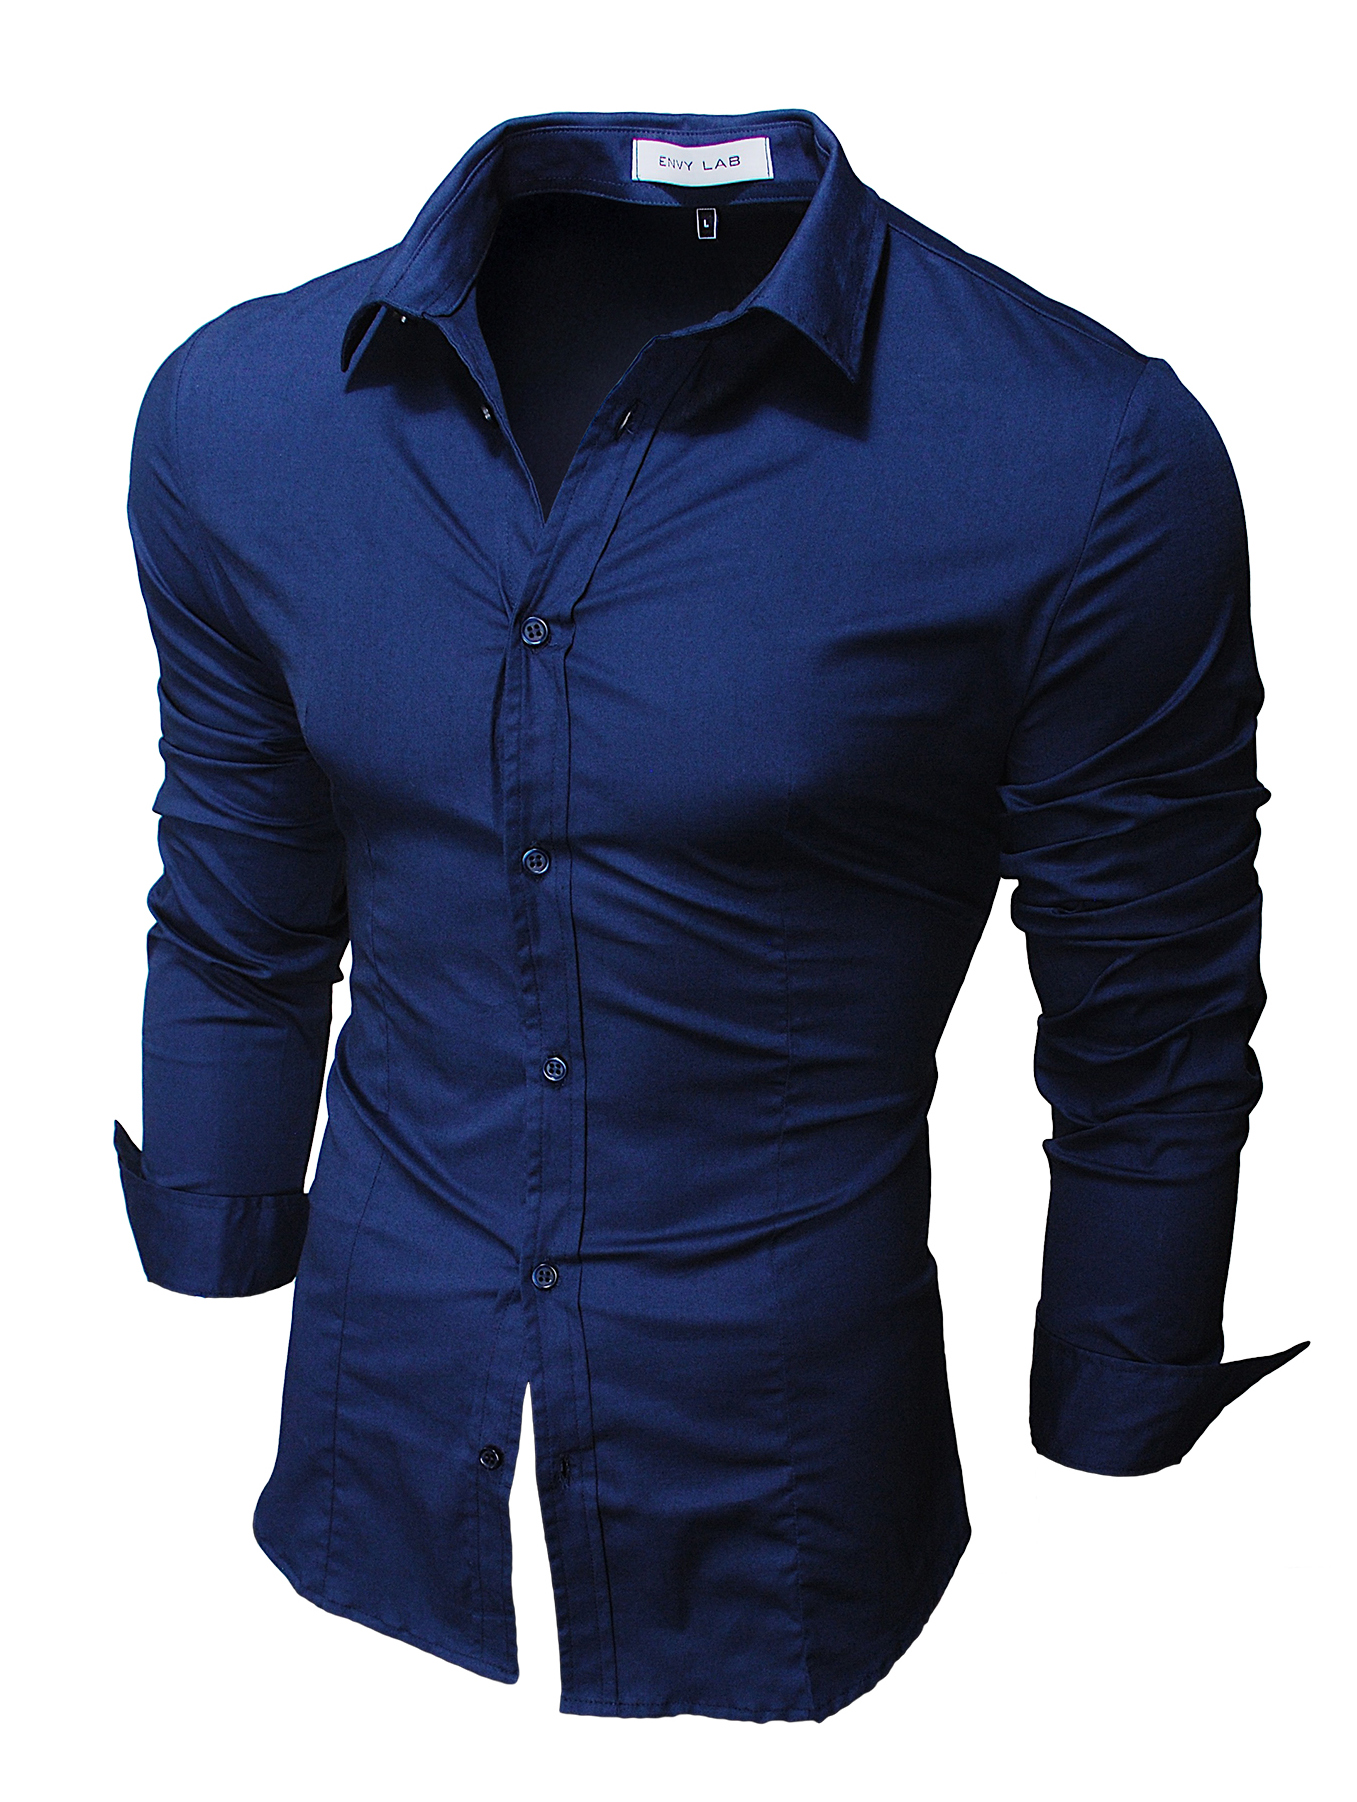 картинка товара рубашка blue shirt в магазине Envy LAB